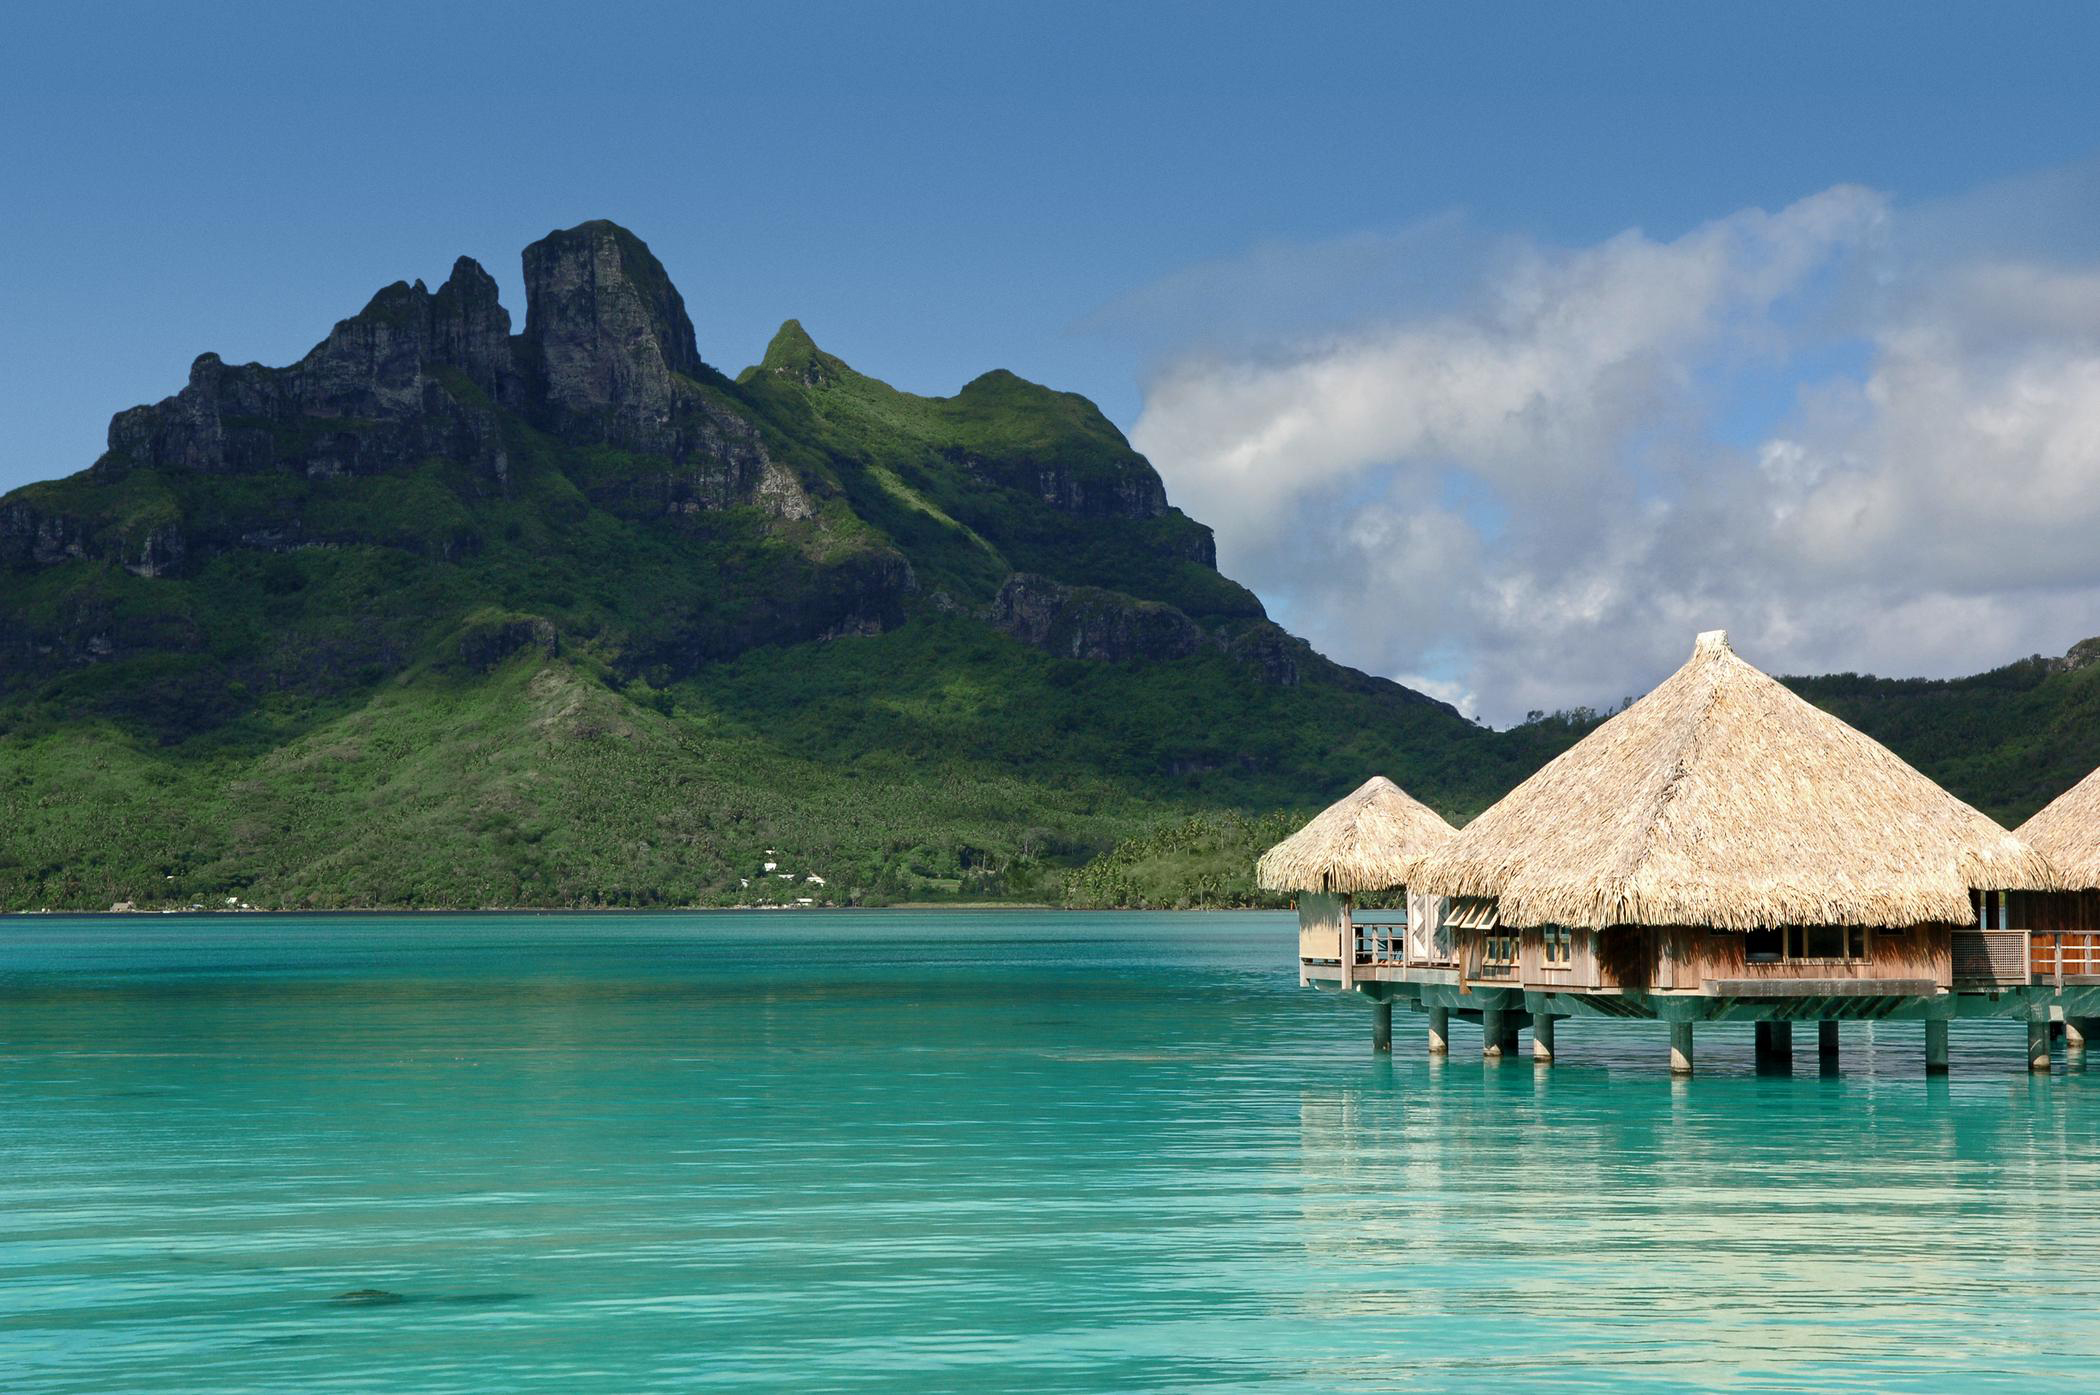 Le géant chinois HNA Tourism group rachète le Hilton Moorea et l'hôtel St-Régis de Bora Bora.